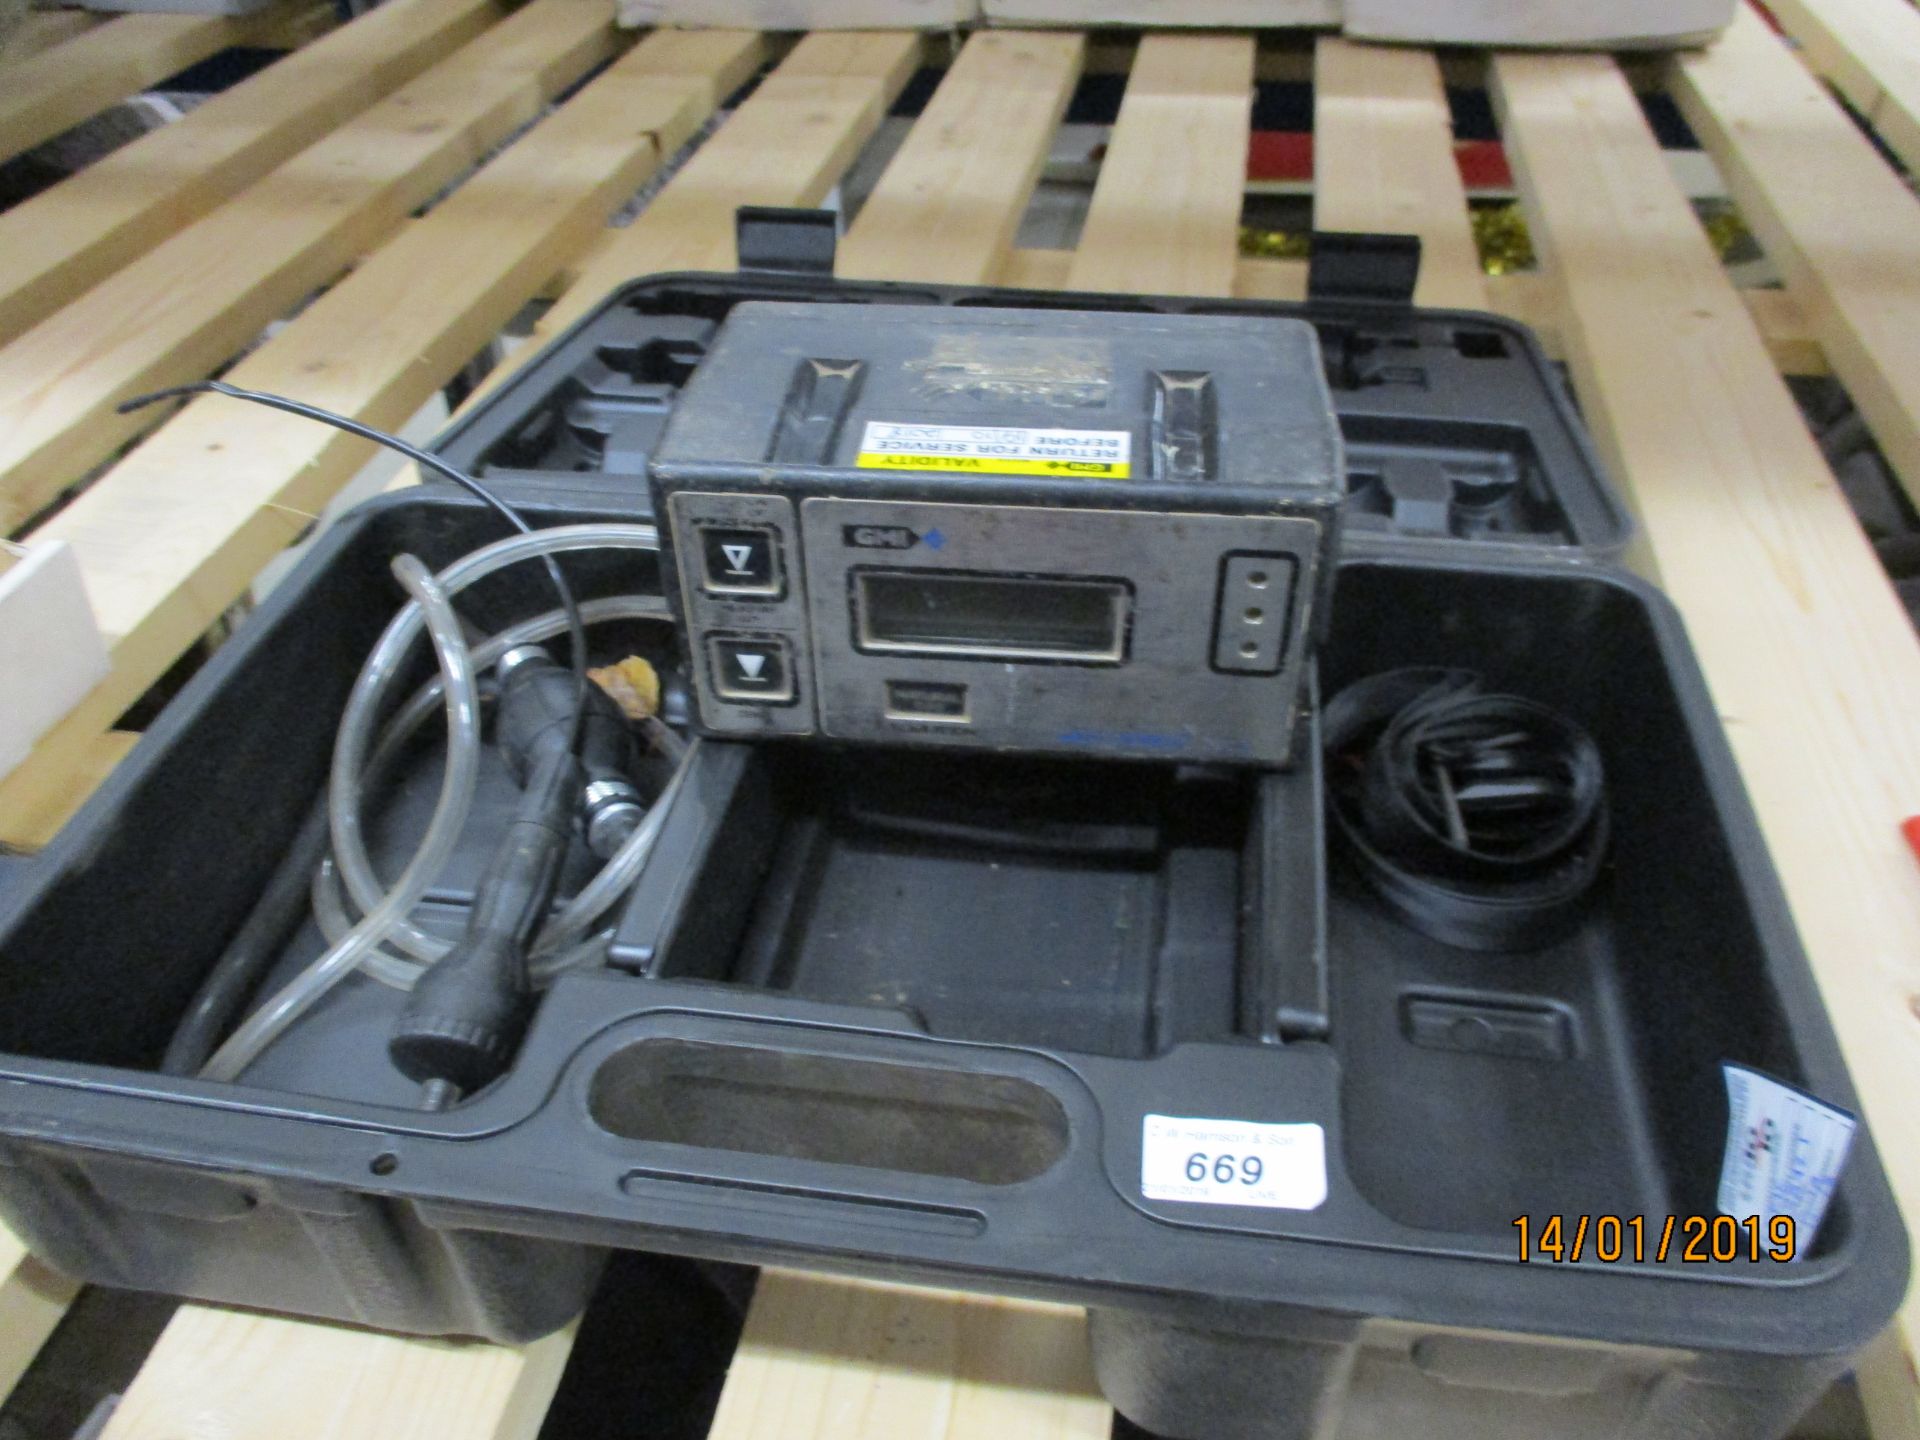 A GMI Gascoseeker MK2 gas measurement reader kit in case